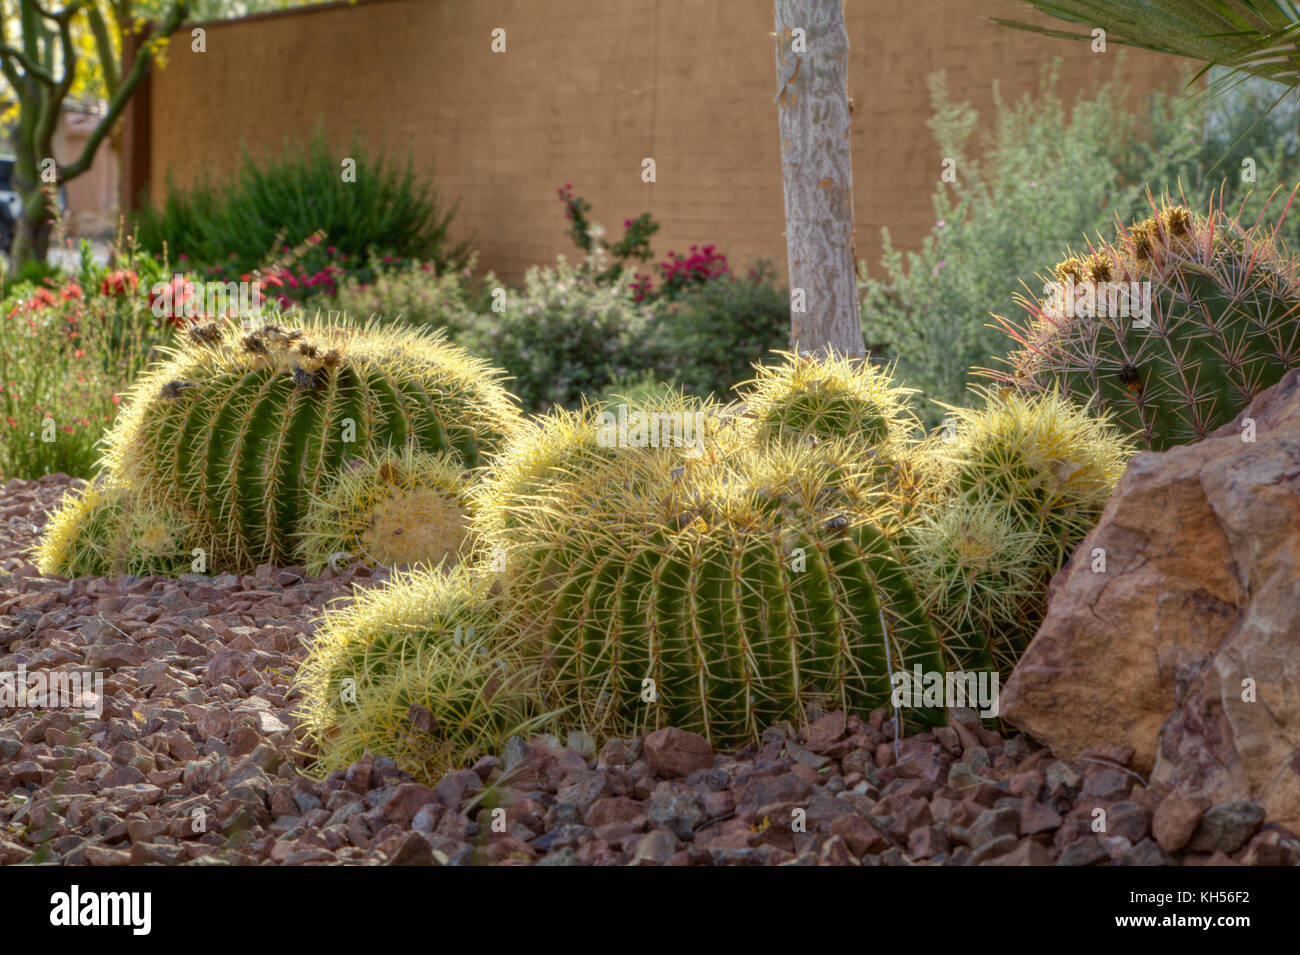 Golden Barrel cactus in a garden setting. Stock Photo